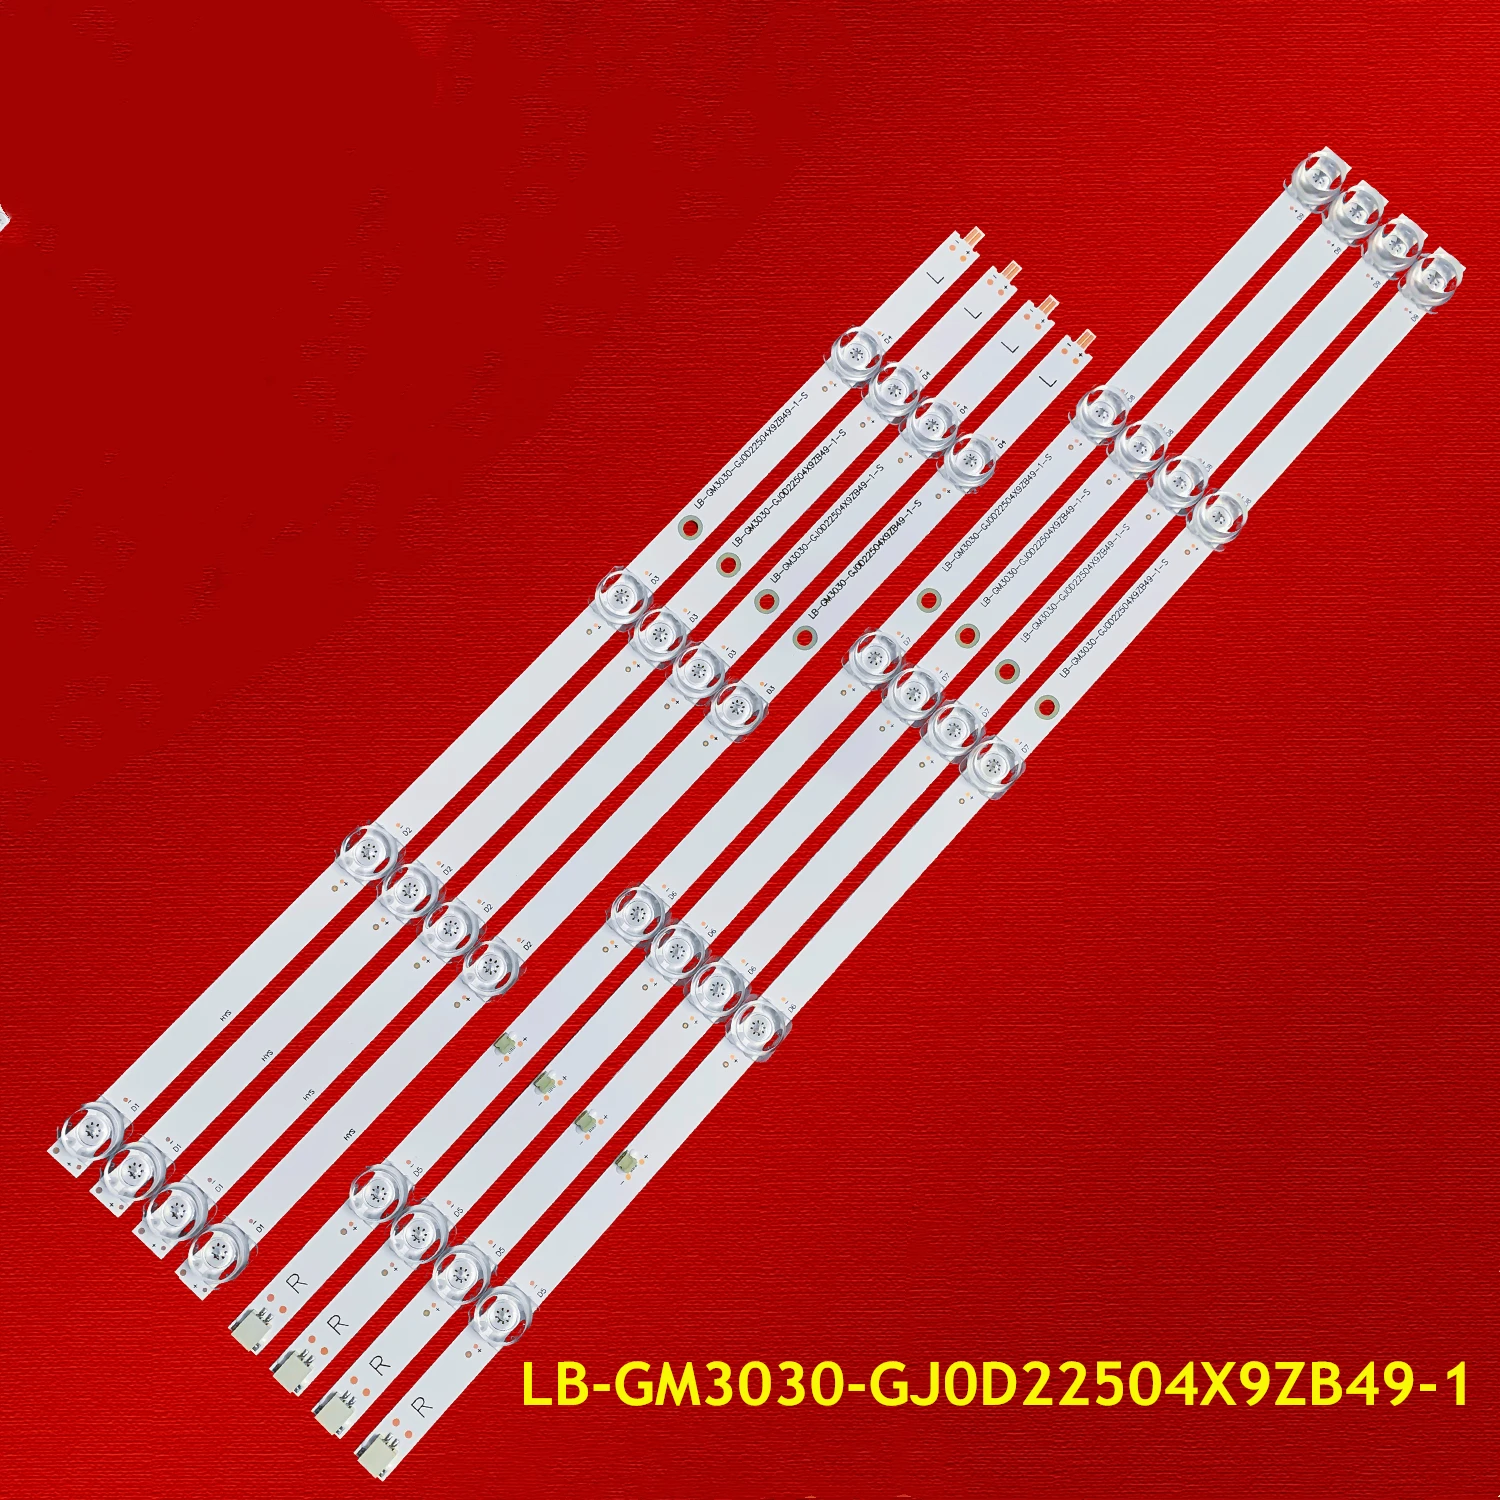 

LED Backlight Strip for L50M5-5ARU LB-GM3030-GJ0D22504X9ZB49-1-T